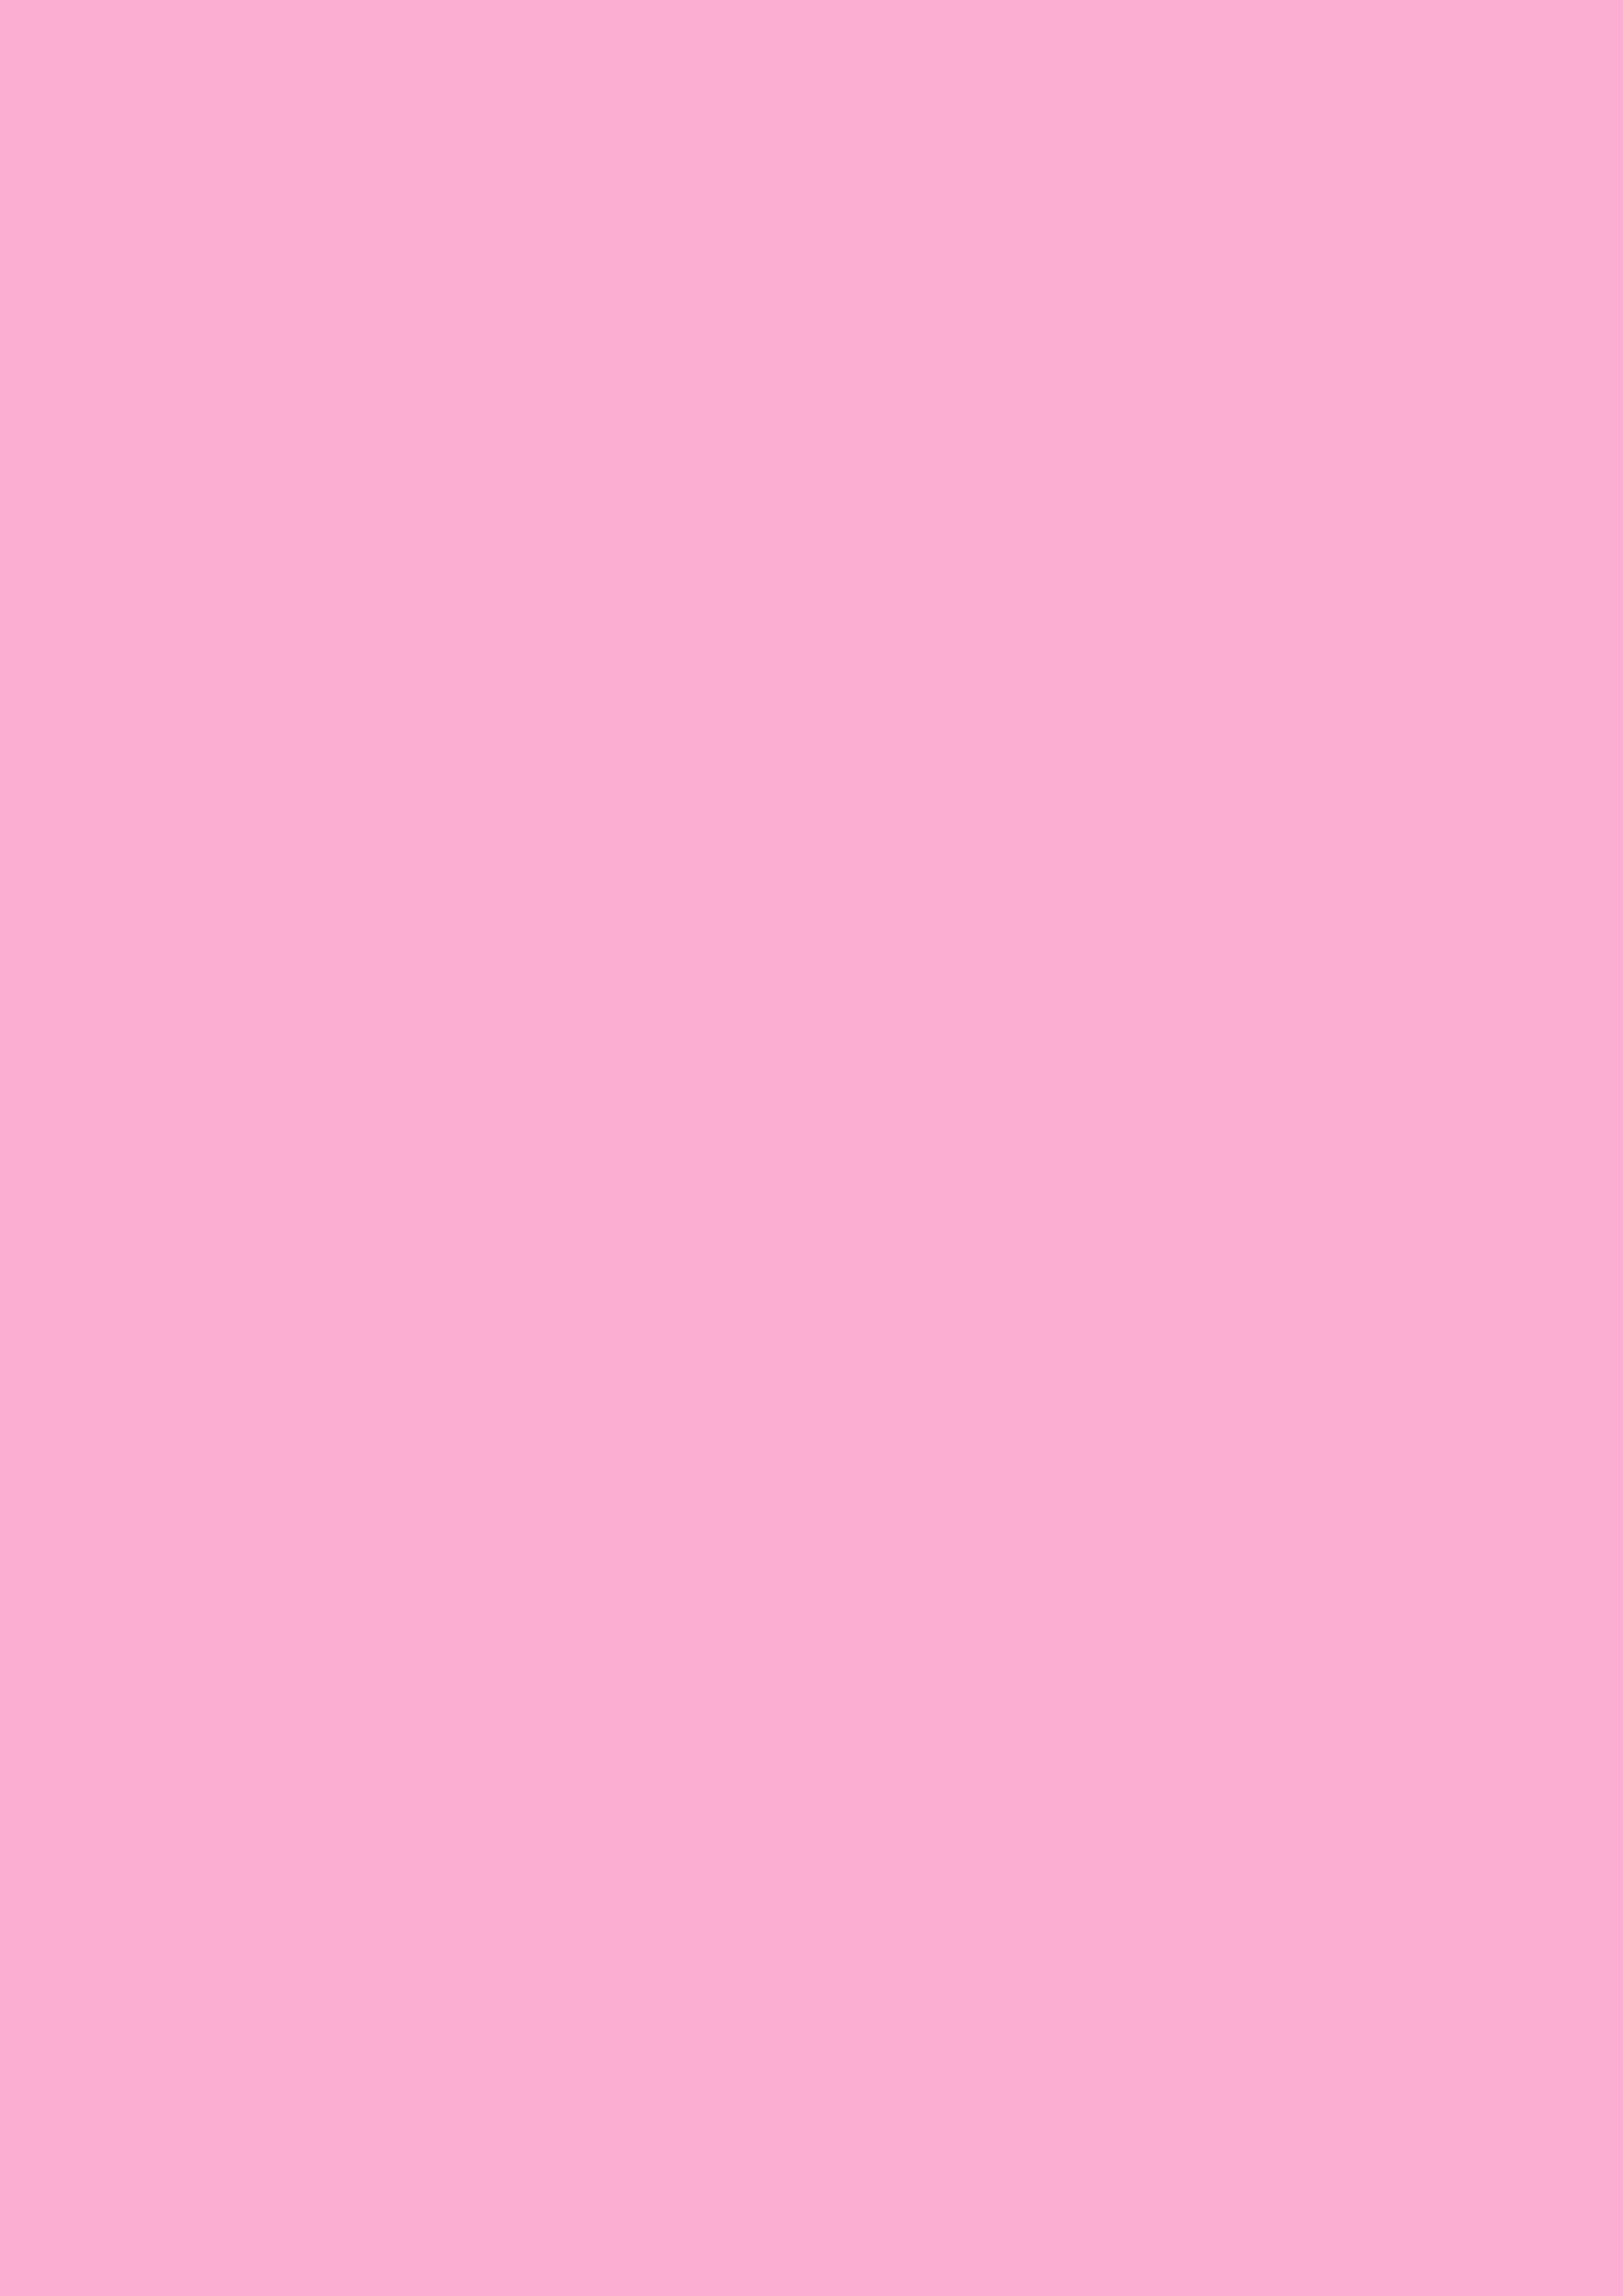 2480x3508 Lavender Pink Solid Color Background